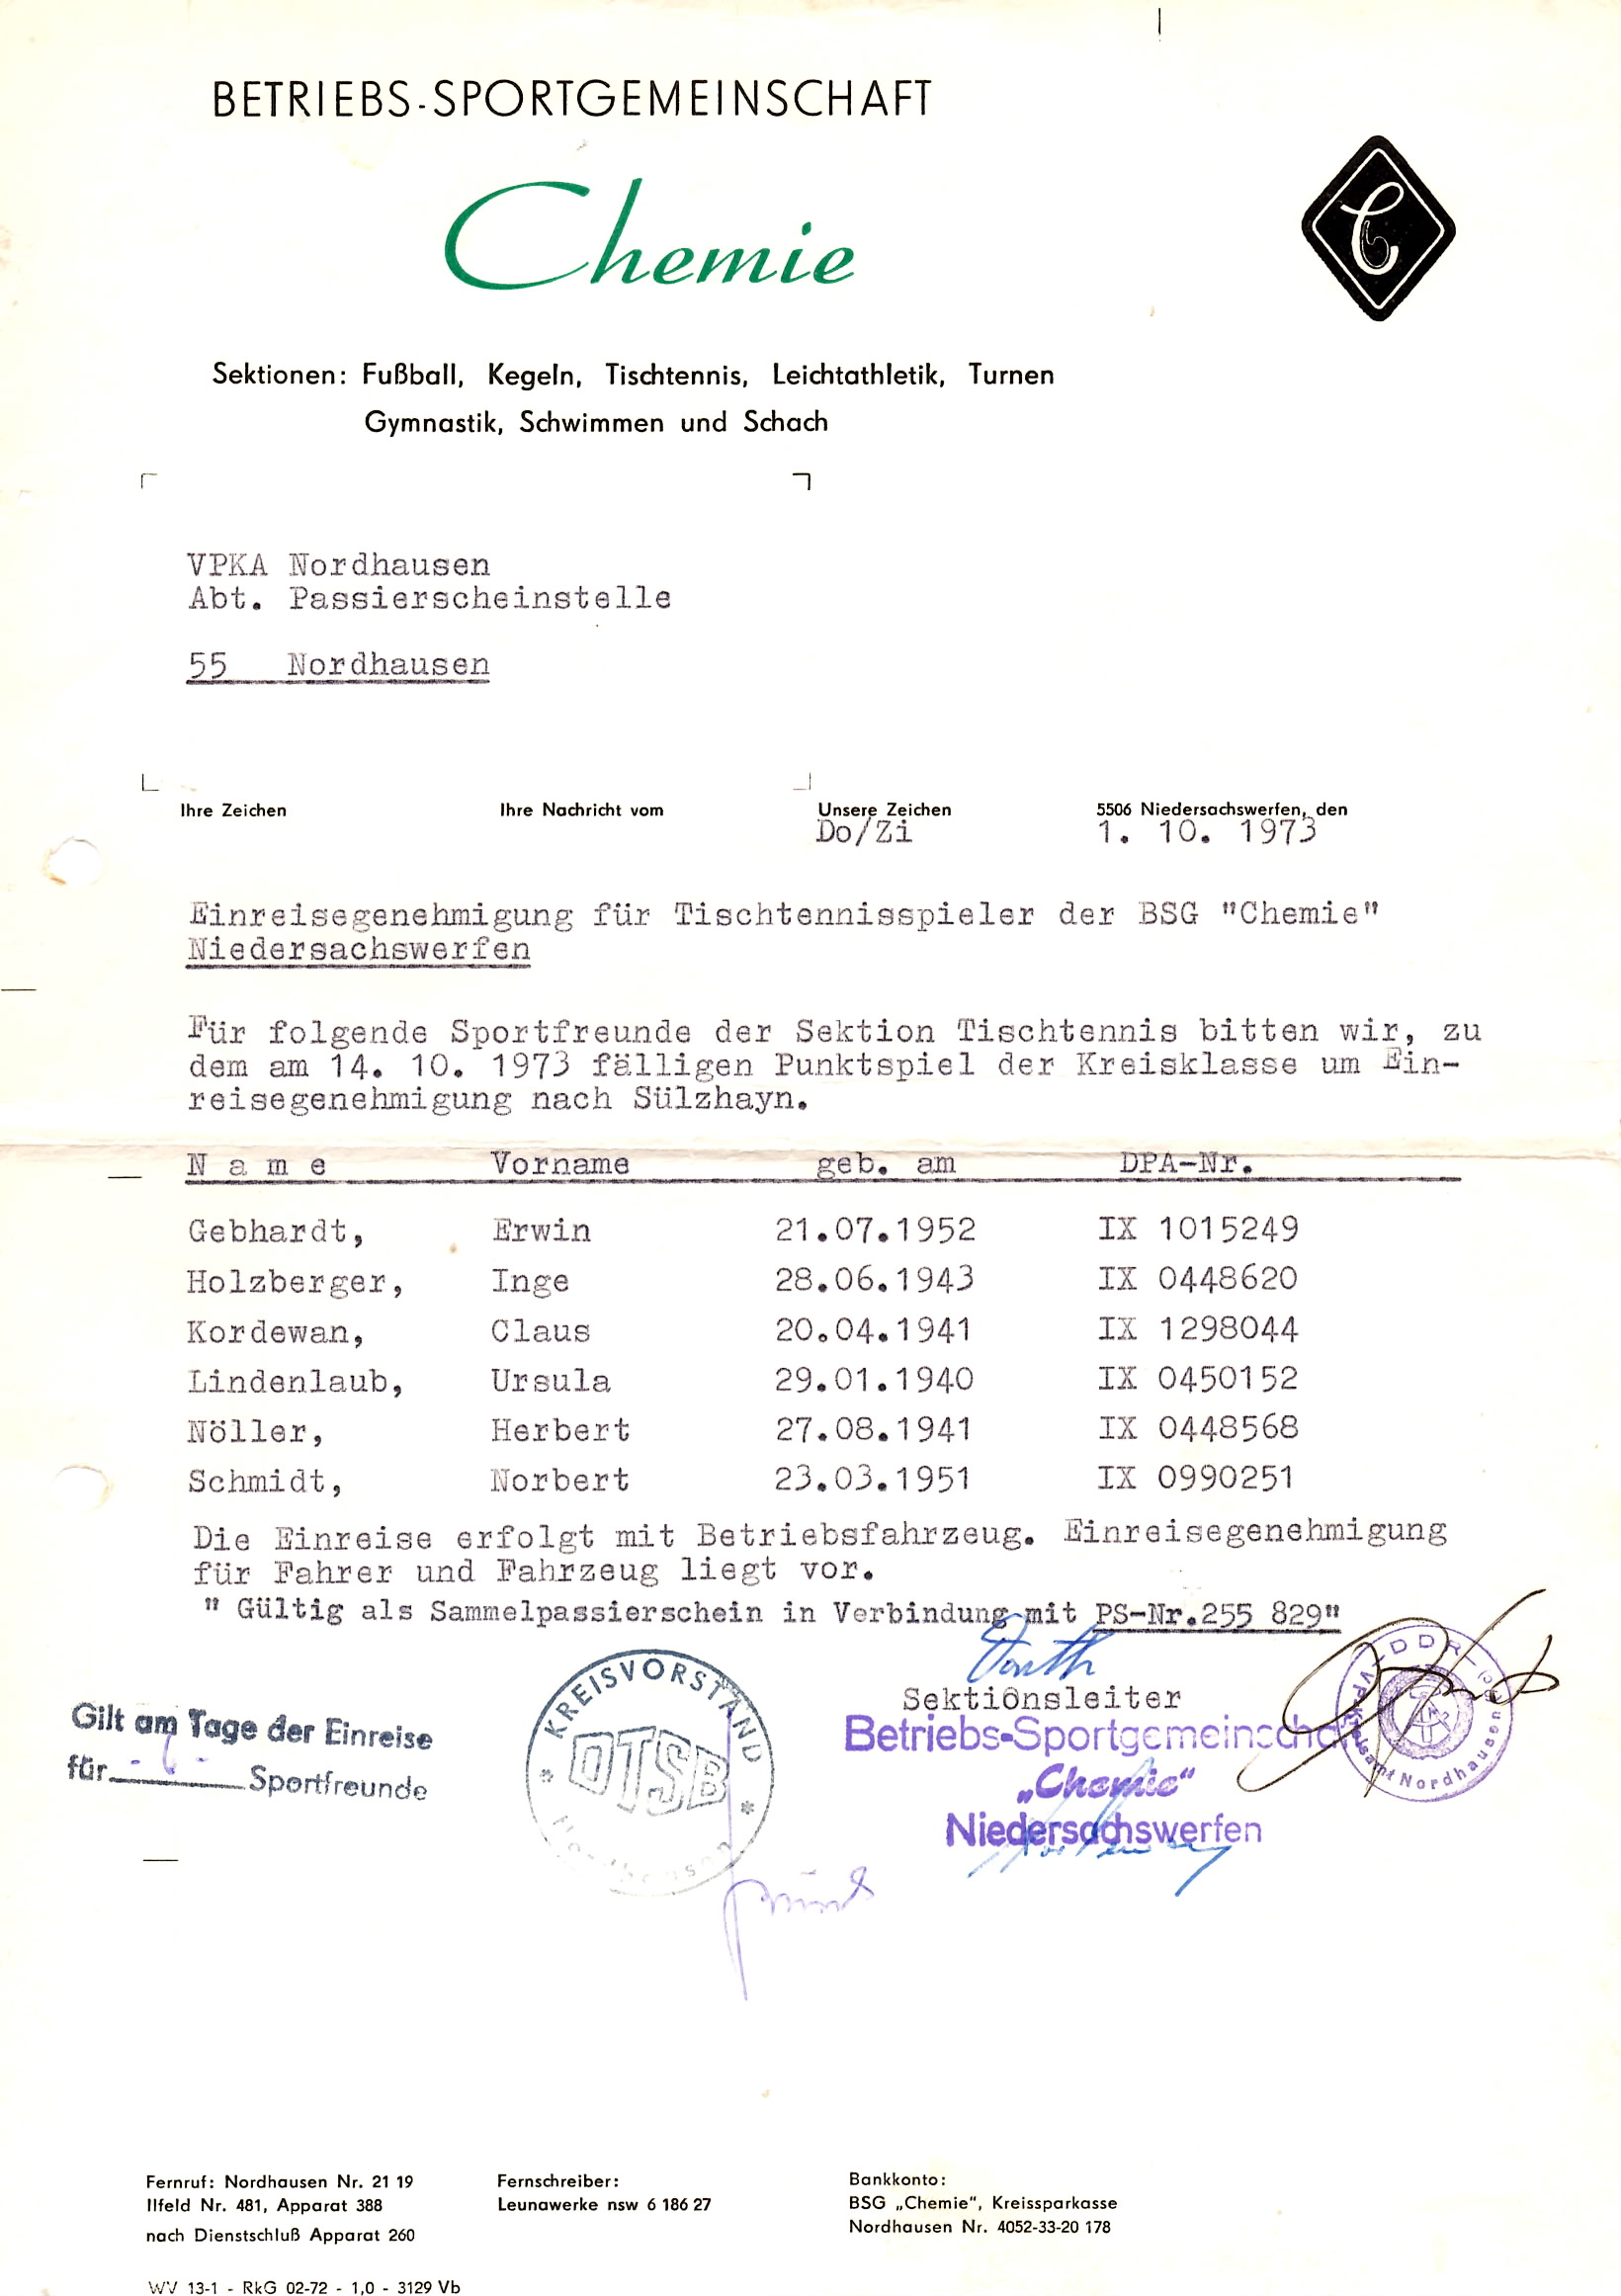 TT DDR Zeiten Einreisegenehmigung 1973